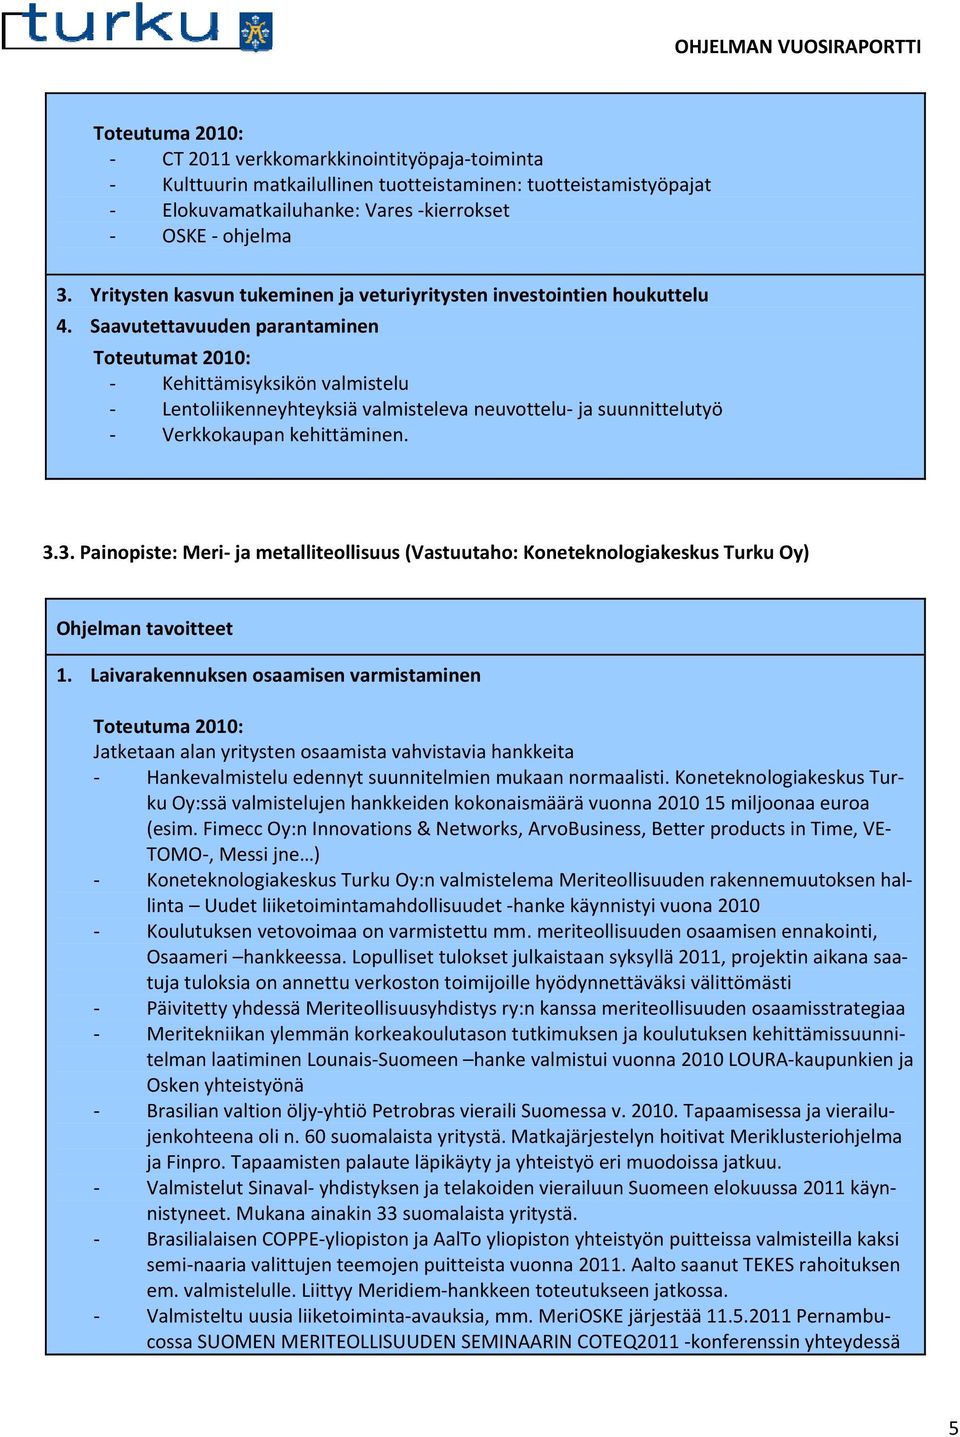 Saavutettavuuden parantaminen Toteutumat 2010: - Kehittämisyksikön valmistelu - Lentoliikenneyhteyksiä valmisteleva neuvottelu- ja suunnittelutyö - Verkkokaupan kehittäminen. 3.